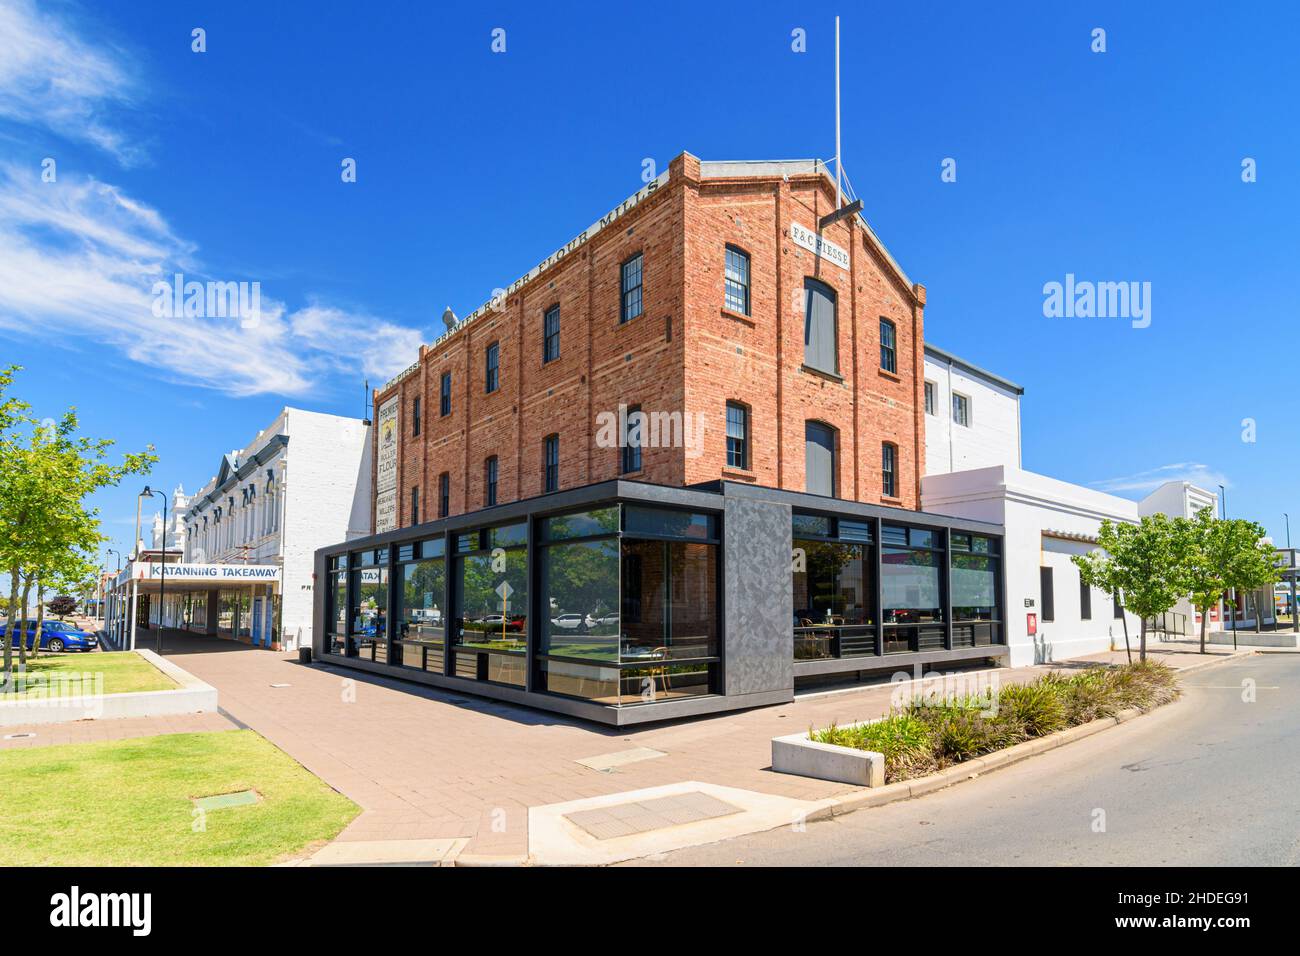 Ancien moulin à farine Katanning, aujourd'hui le luxueux Premier Mill Hotel and Dome Cafe, dans la ville de Katanning, Australie occidentale, Australie Banque D'Images